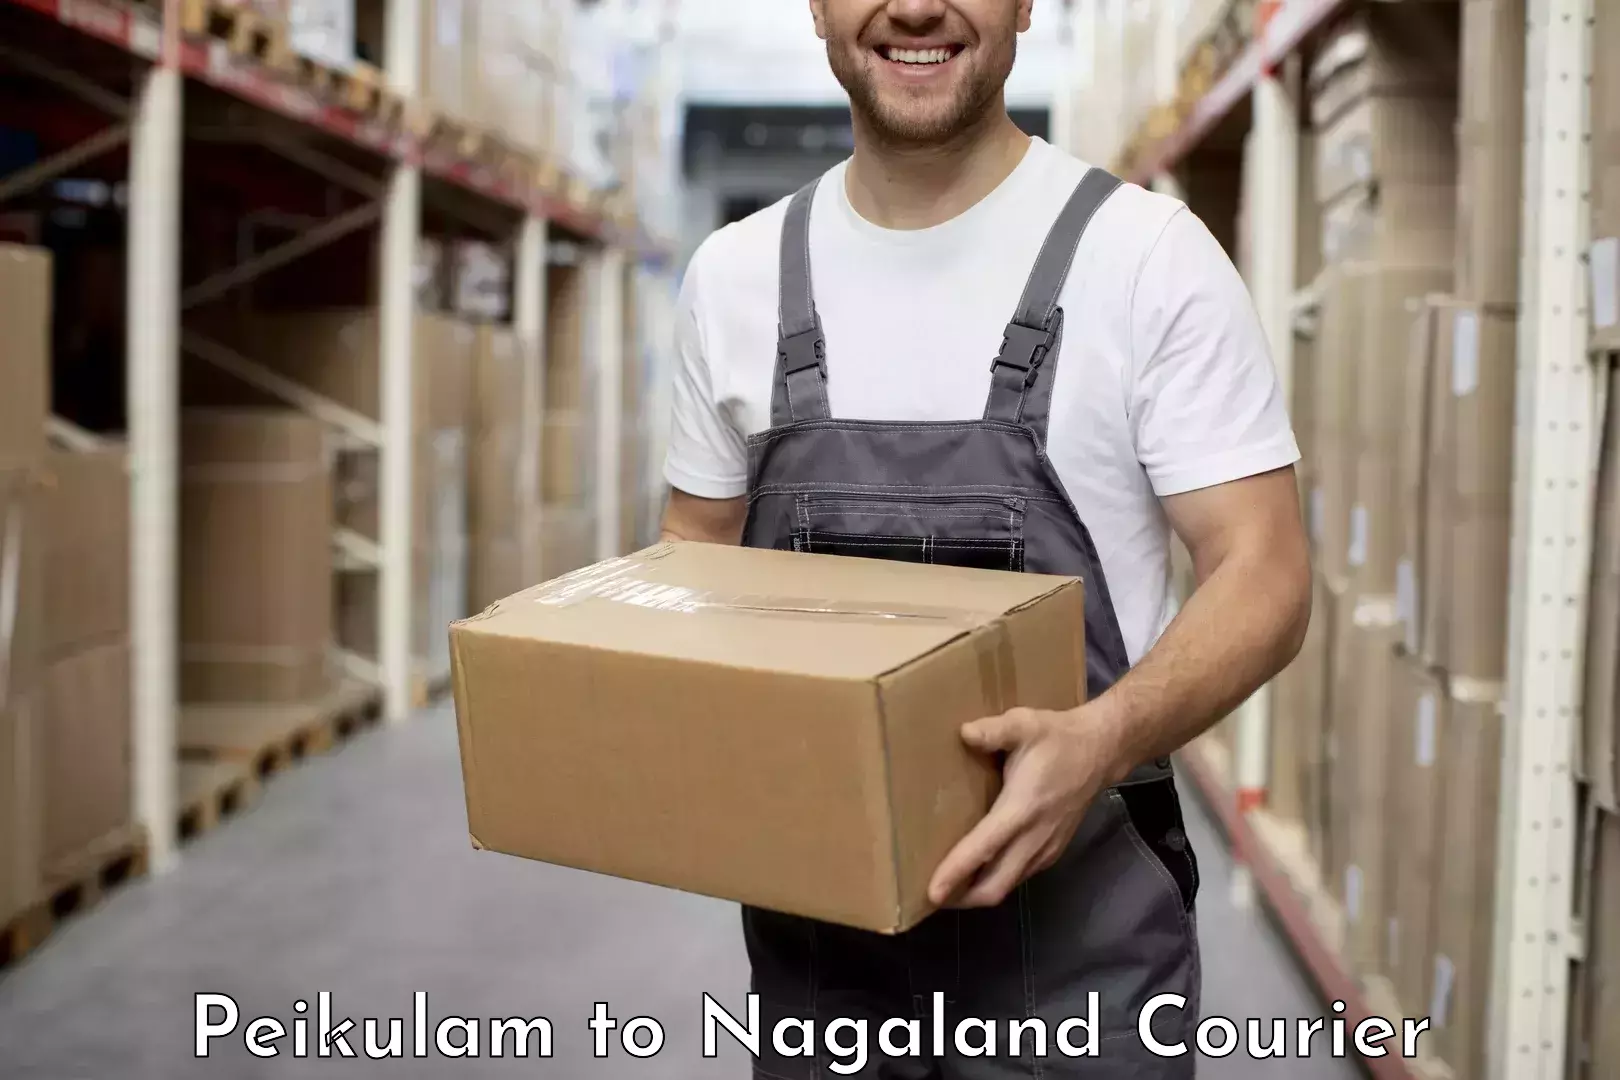 Digital courier platforms Peikulam to Nagaland